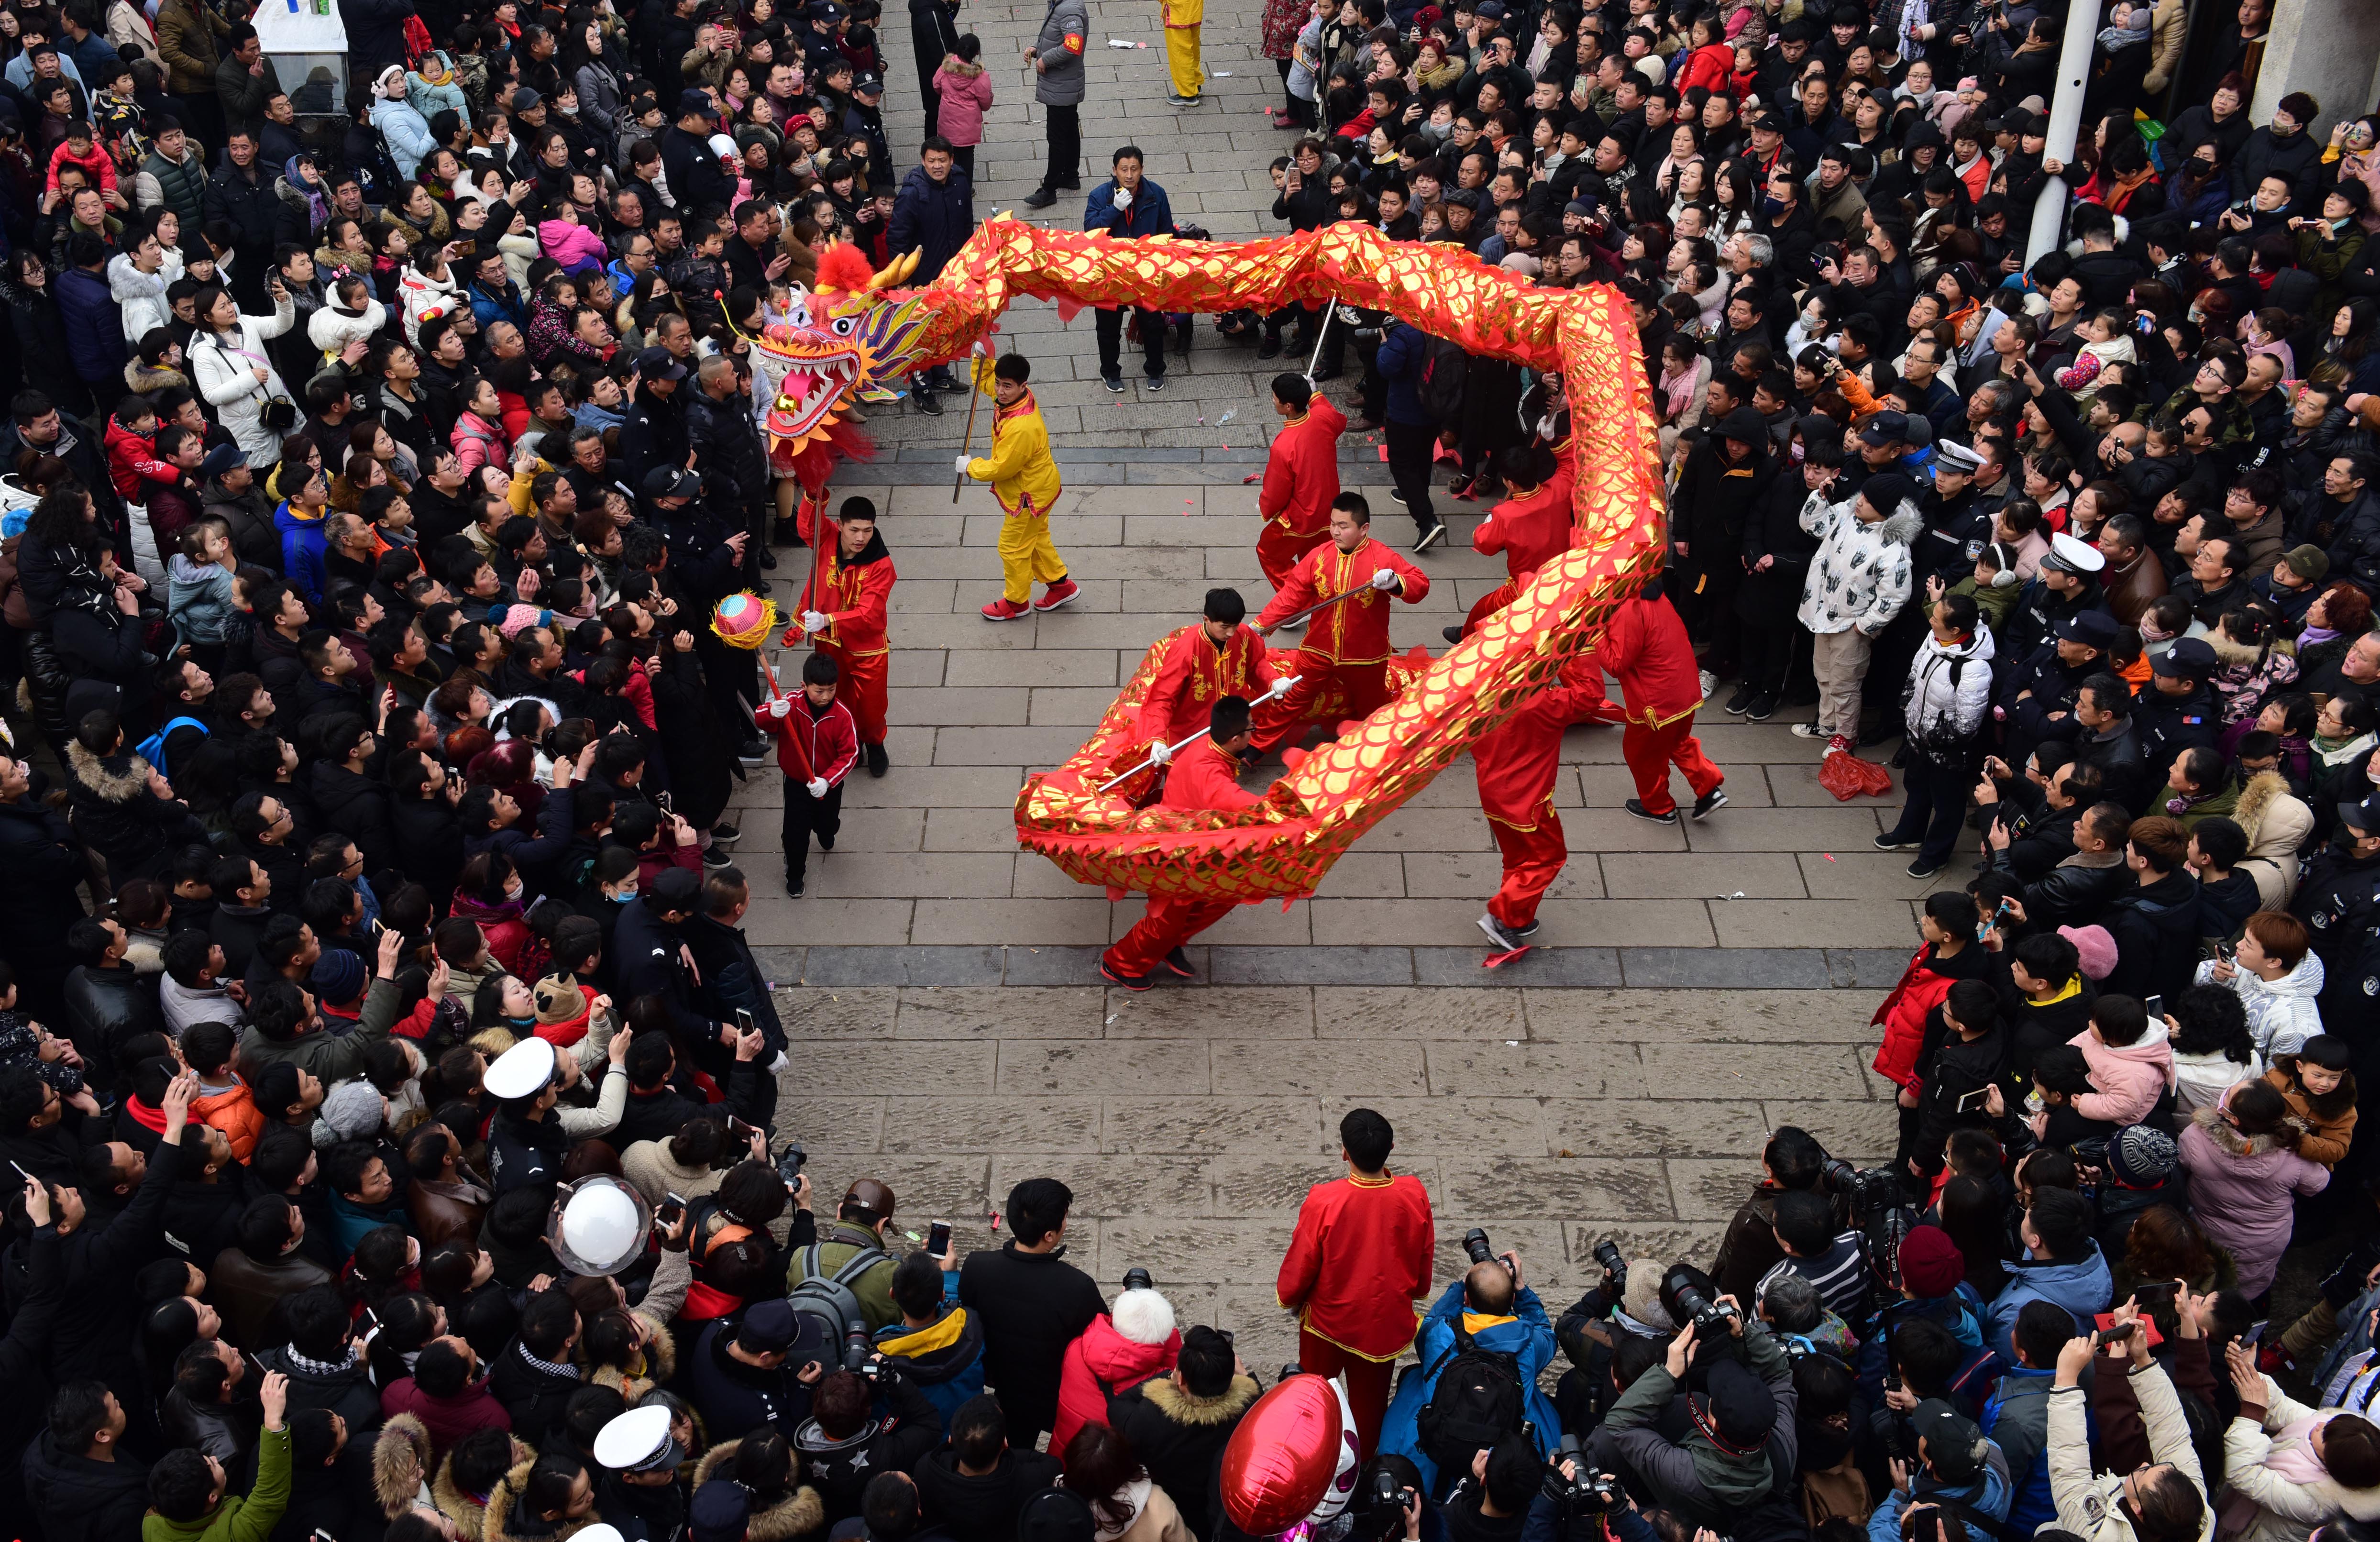 农历正月十六,河南浚县传统古庙会举办社火大赛,吸引了众多游客